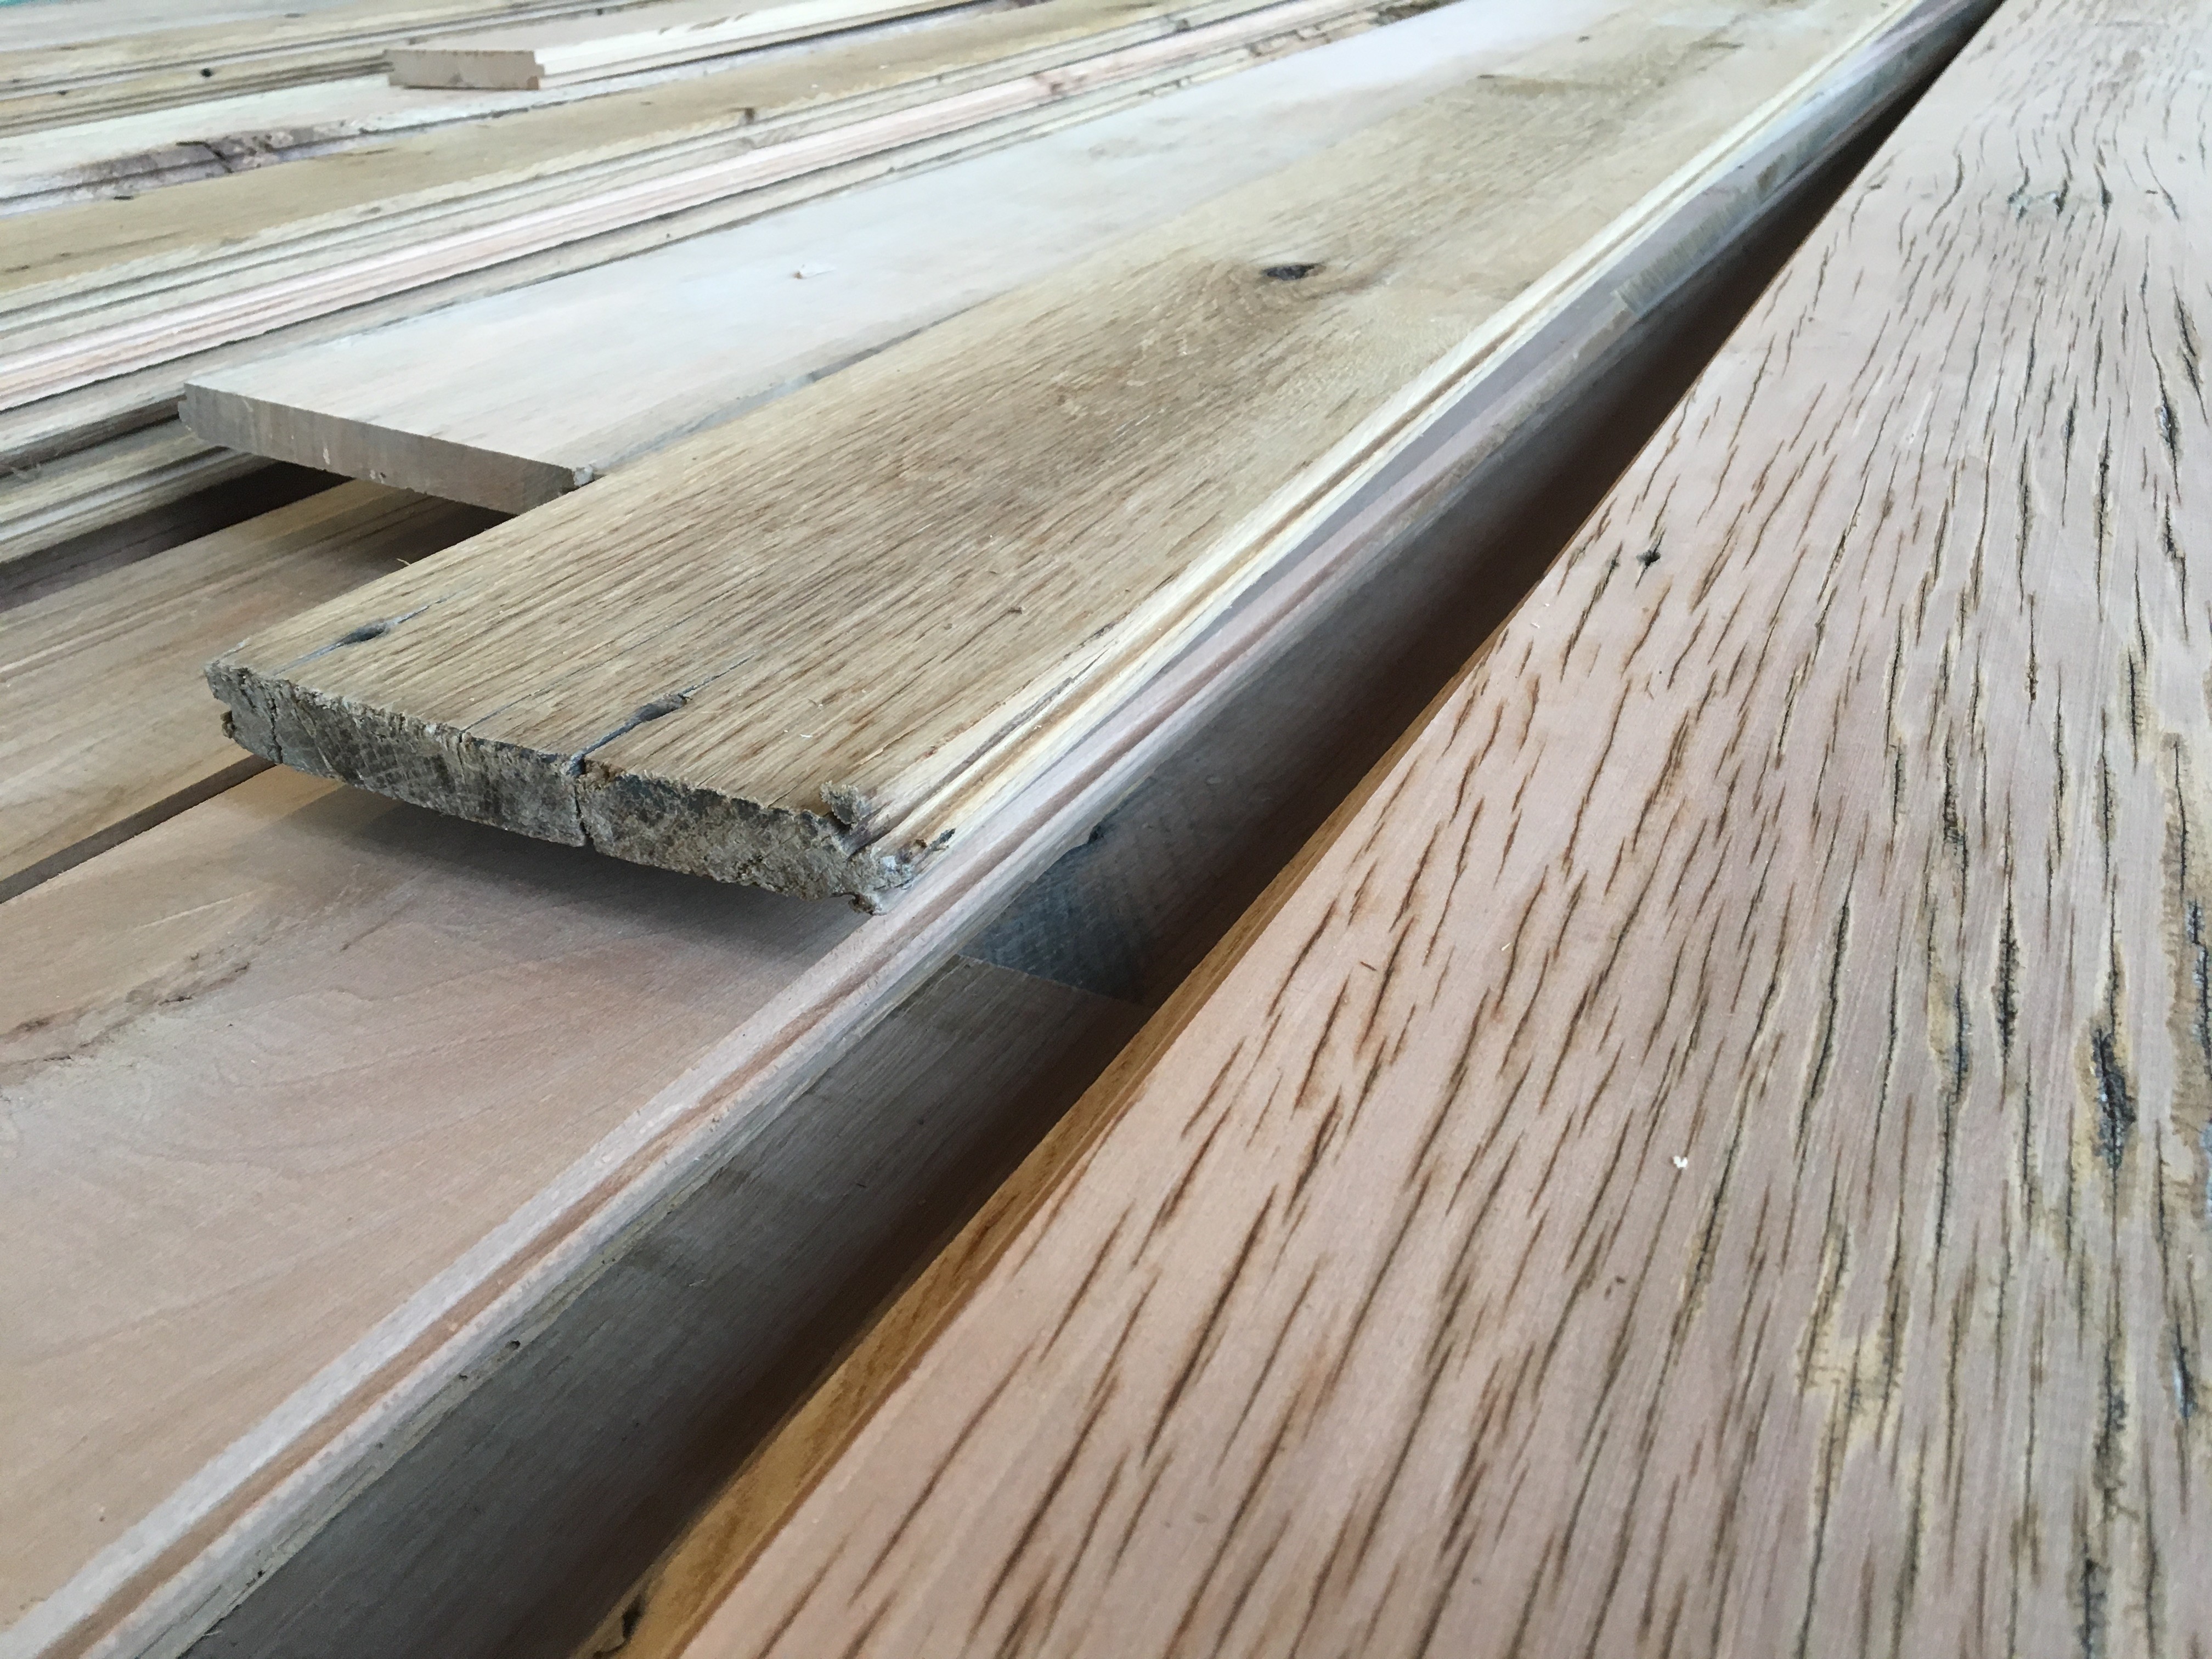 Installing Reclaimed Hardwood Floors, Installing Used Hardwood Flooring